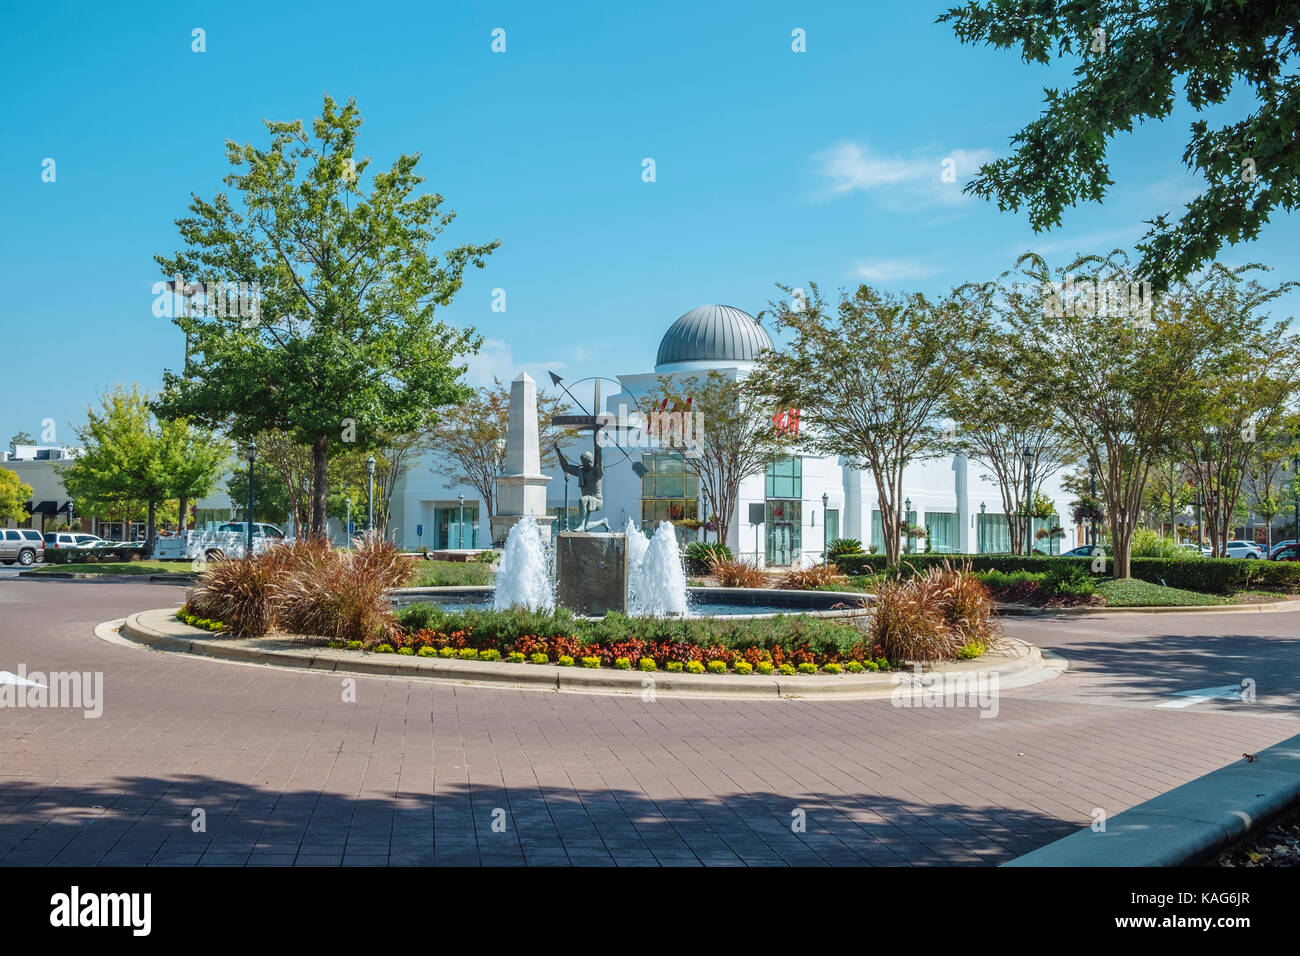 Una grande fontana e illustrazioni grandi acquirenti sulla strada principale in Shoppes at eastchase shopping centre in Montgomery, Alabama, Stati Uniti d'America. Foto Stock